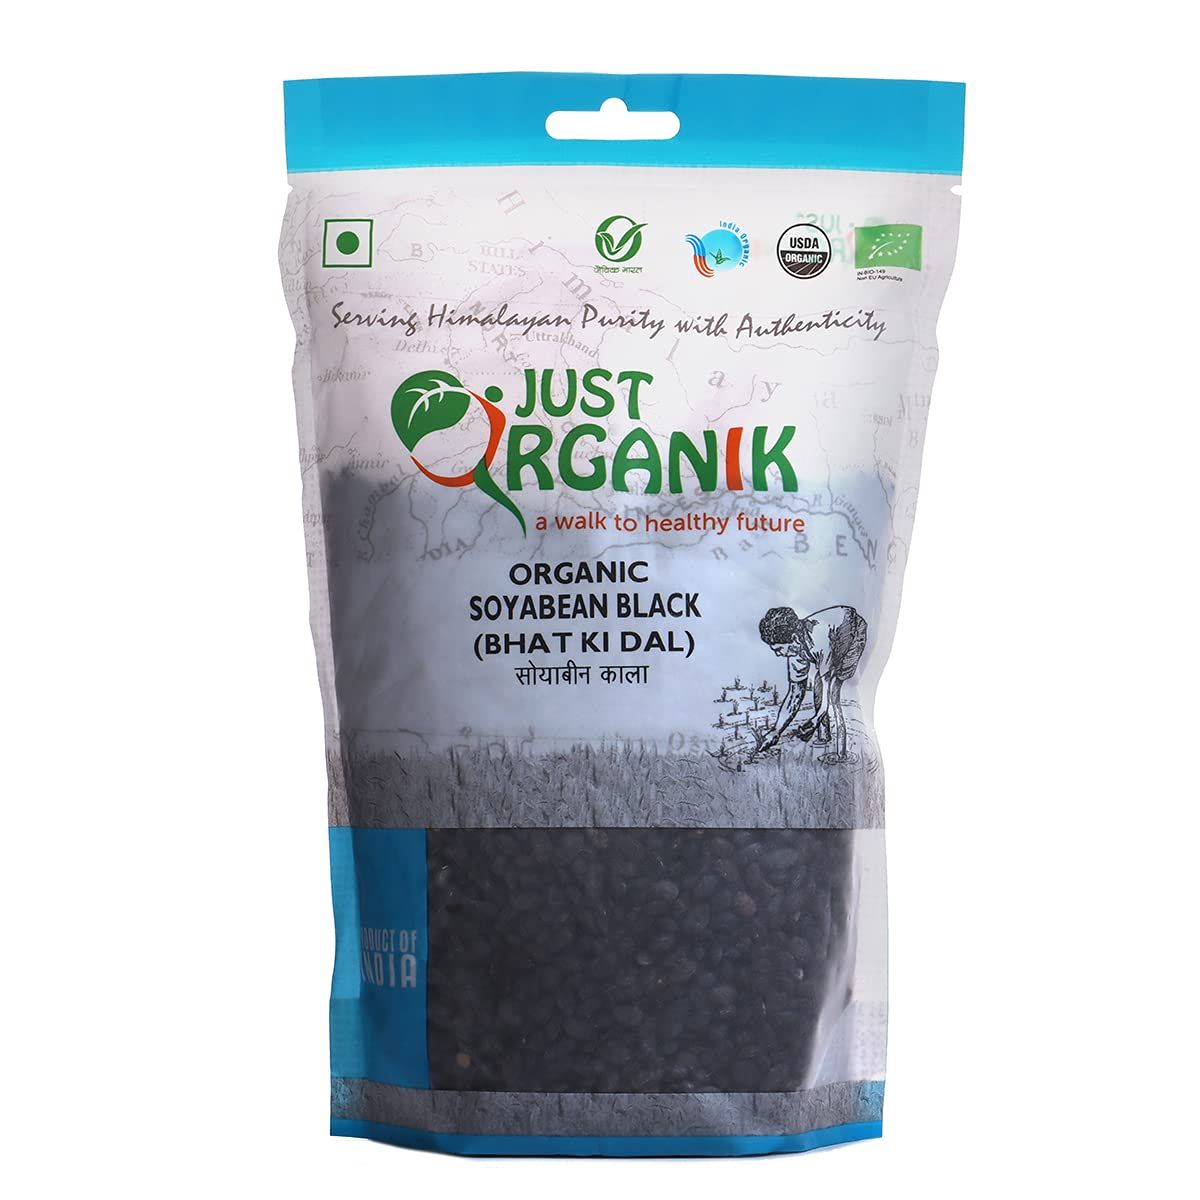 Just Organik Soyabean Black Image